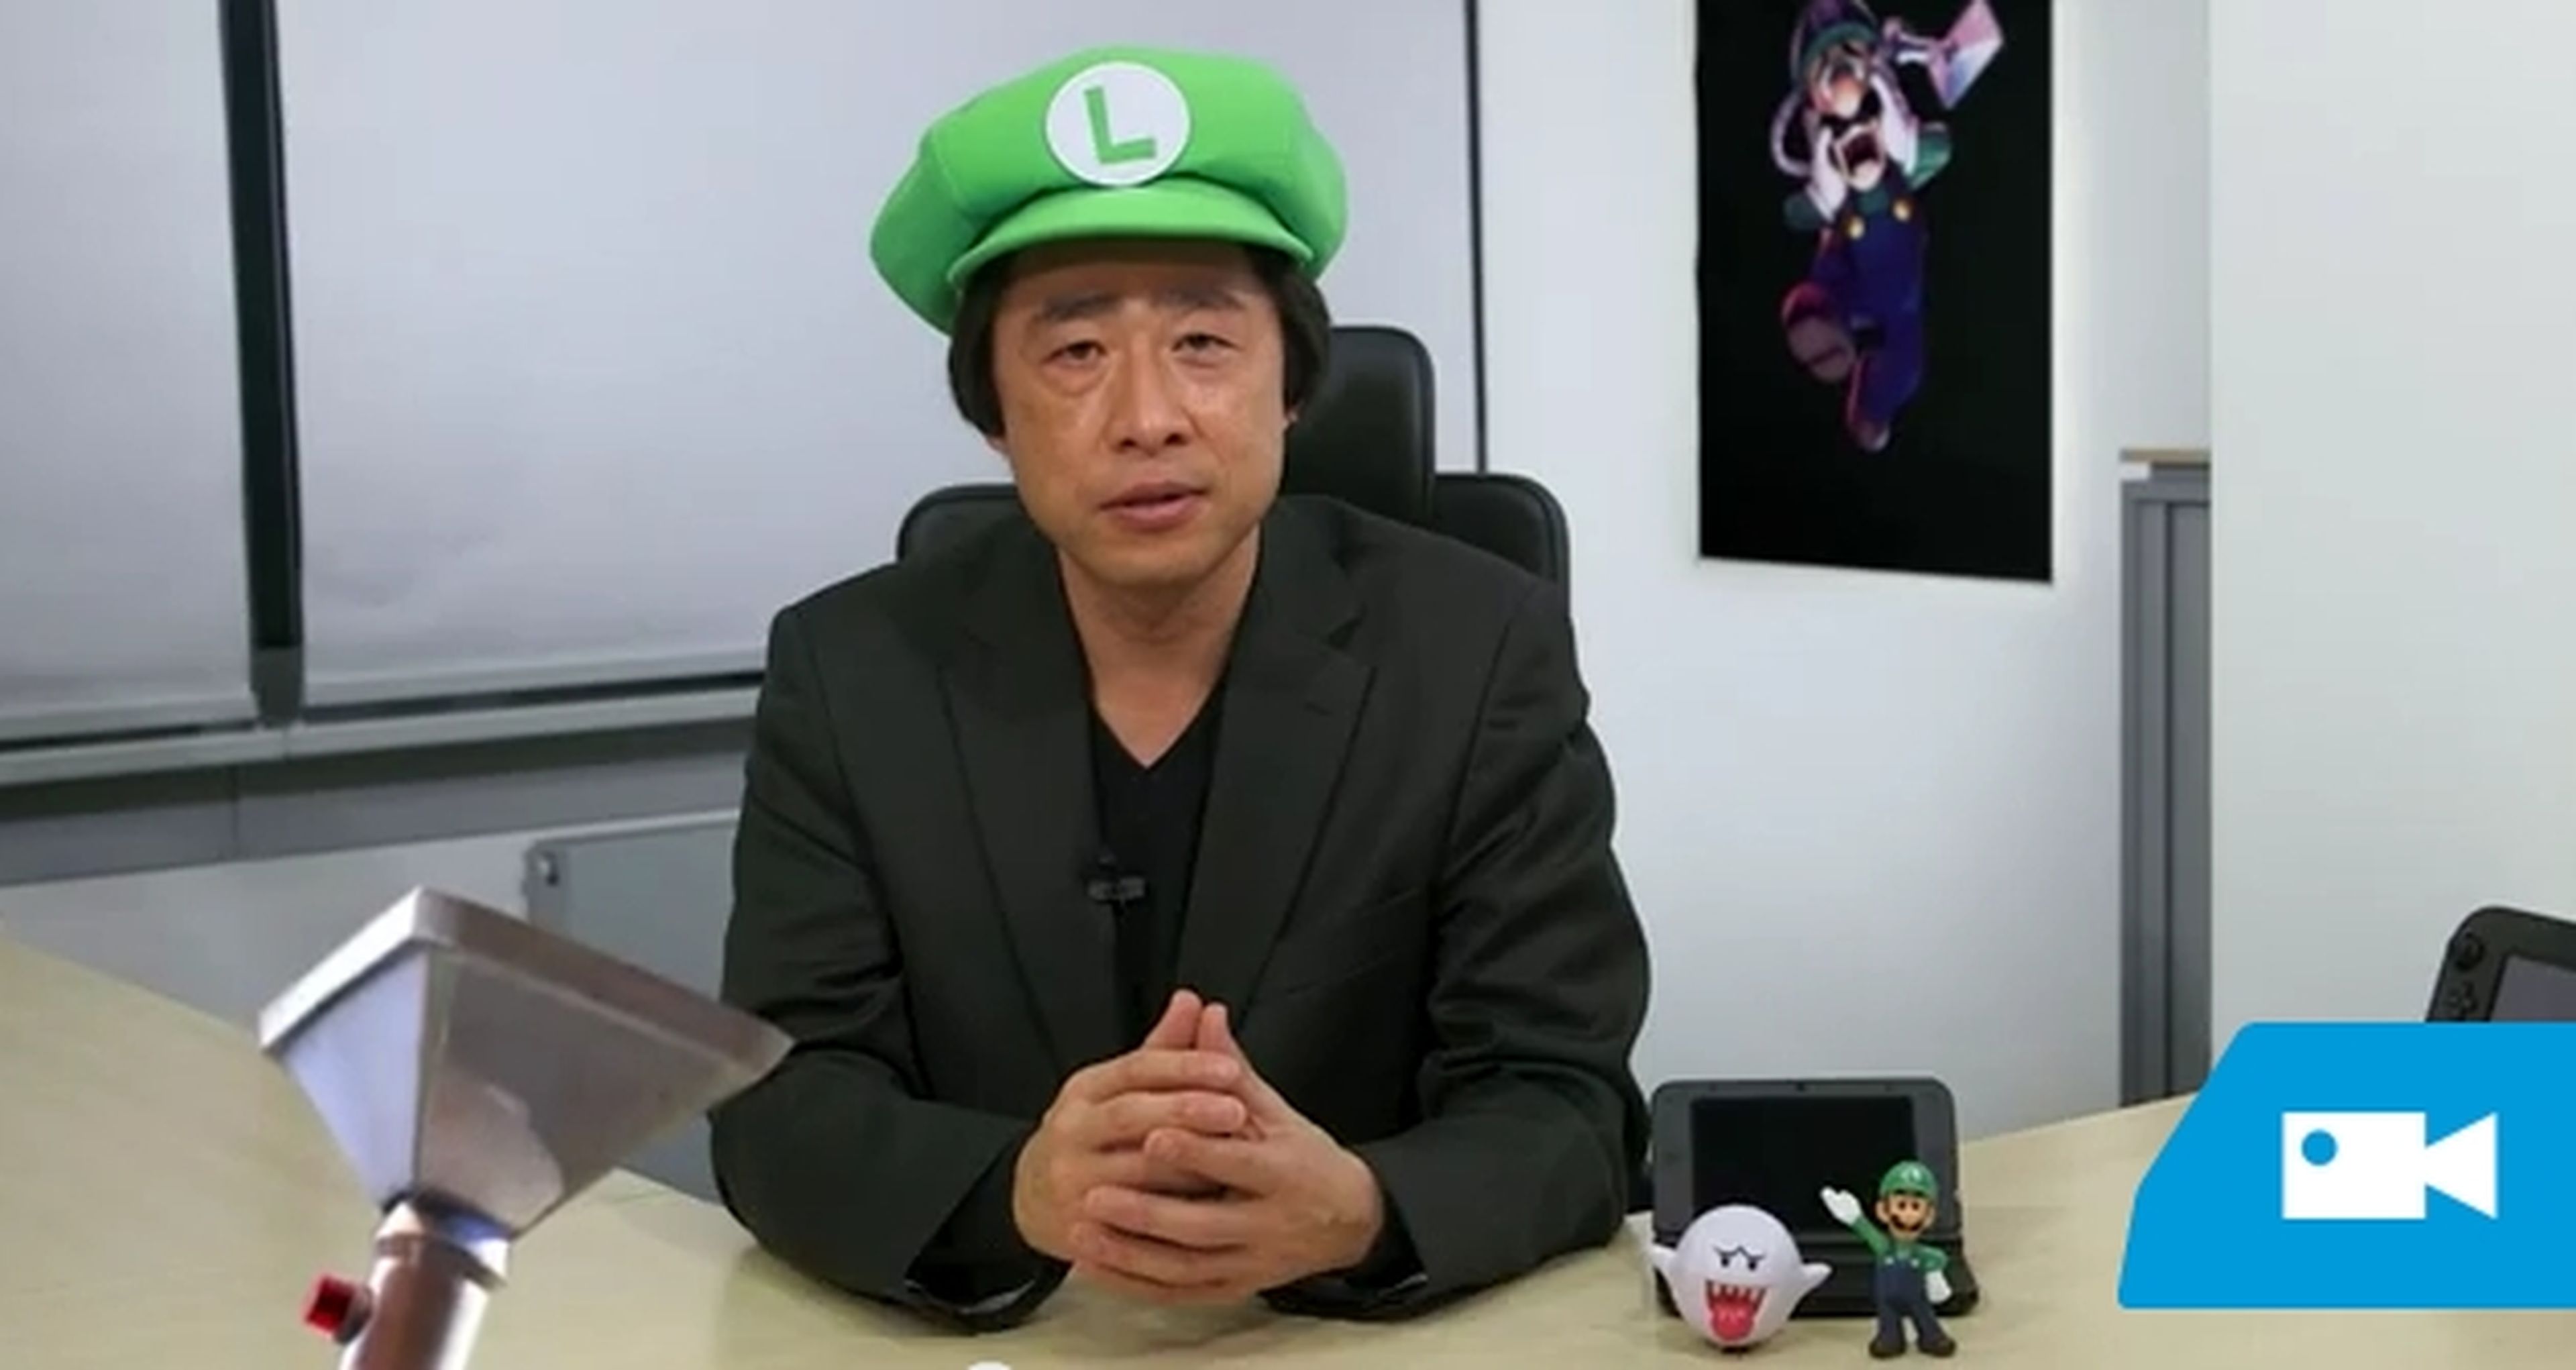 Resumen del Nintendo Direct del 14 de febrero